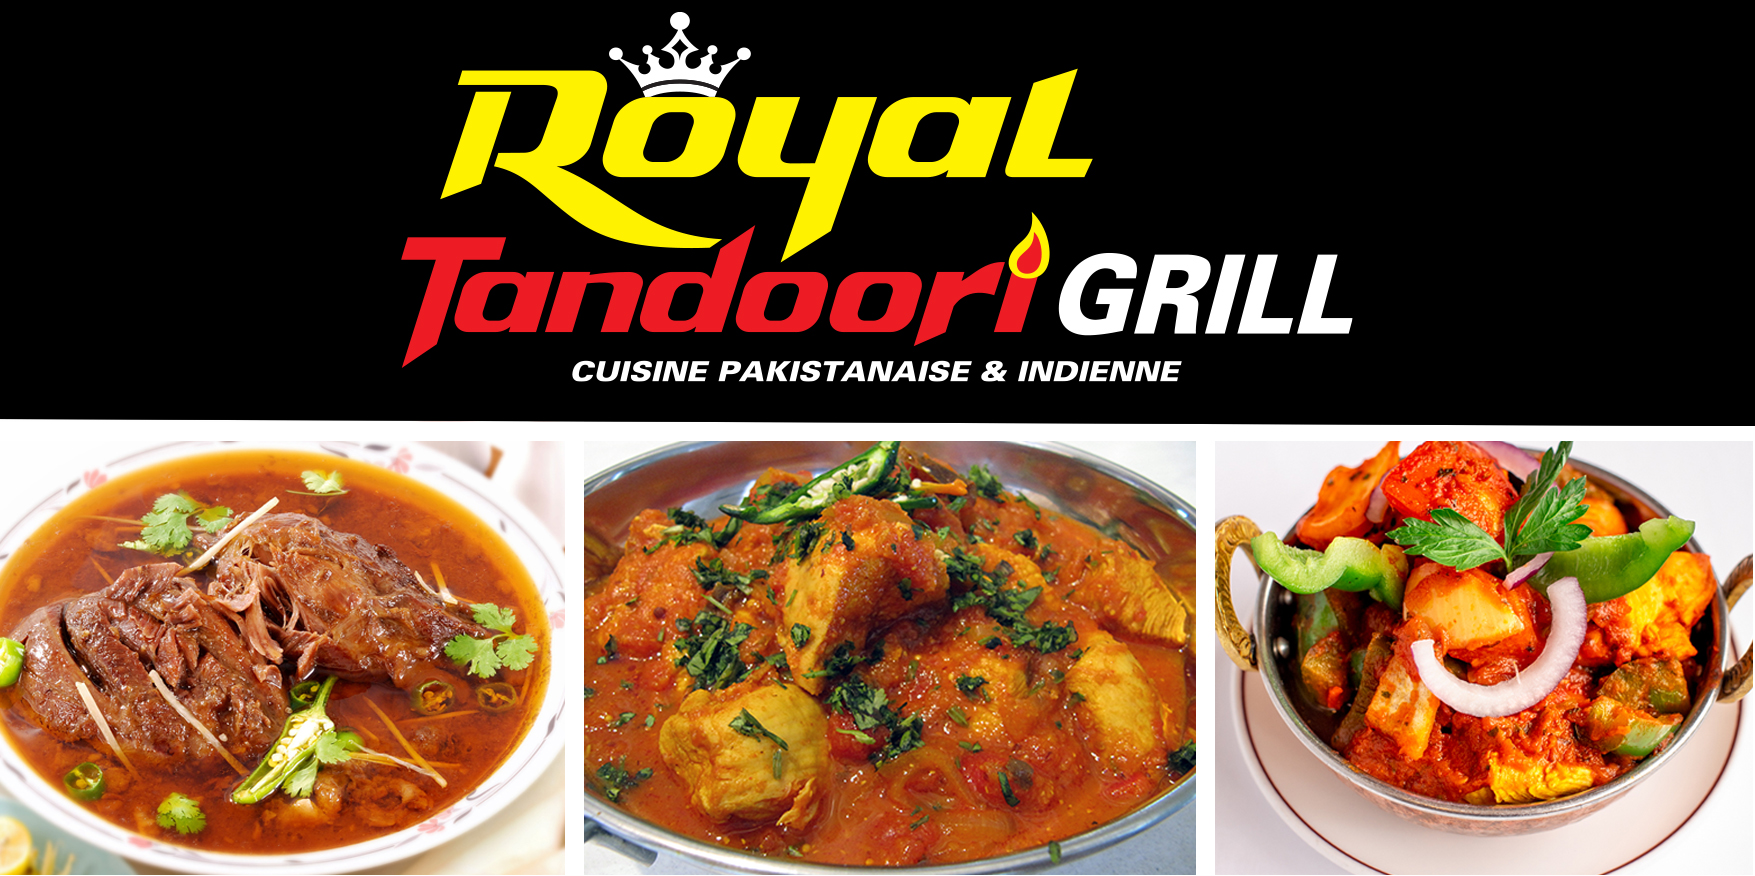 Le restaurant Royal Tandoori Grill est maintenant ouvert